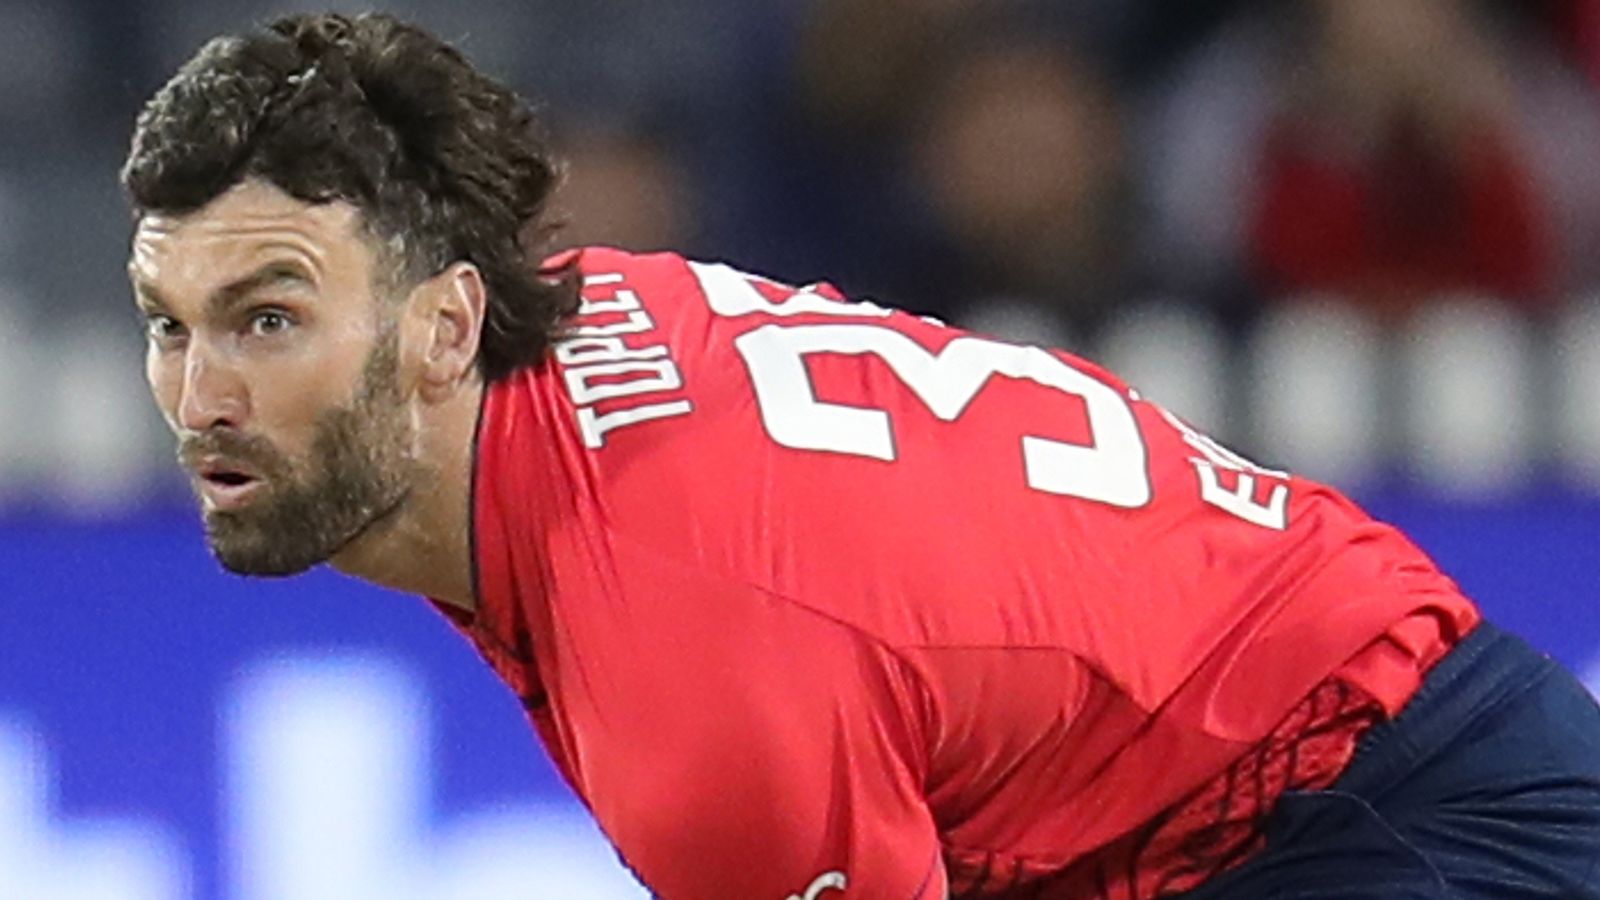 El jugador de bolos de Inglaterra Reece Topley es una duda por lesión para el partido inaugural de la Copa Mundial T20 contra Afganistán después de una torcedura en el tobillo |  Noticias de críquet